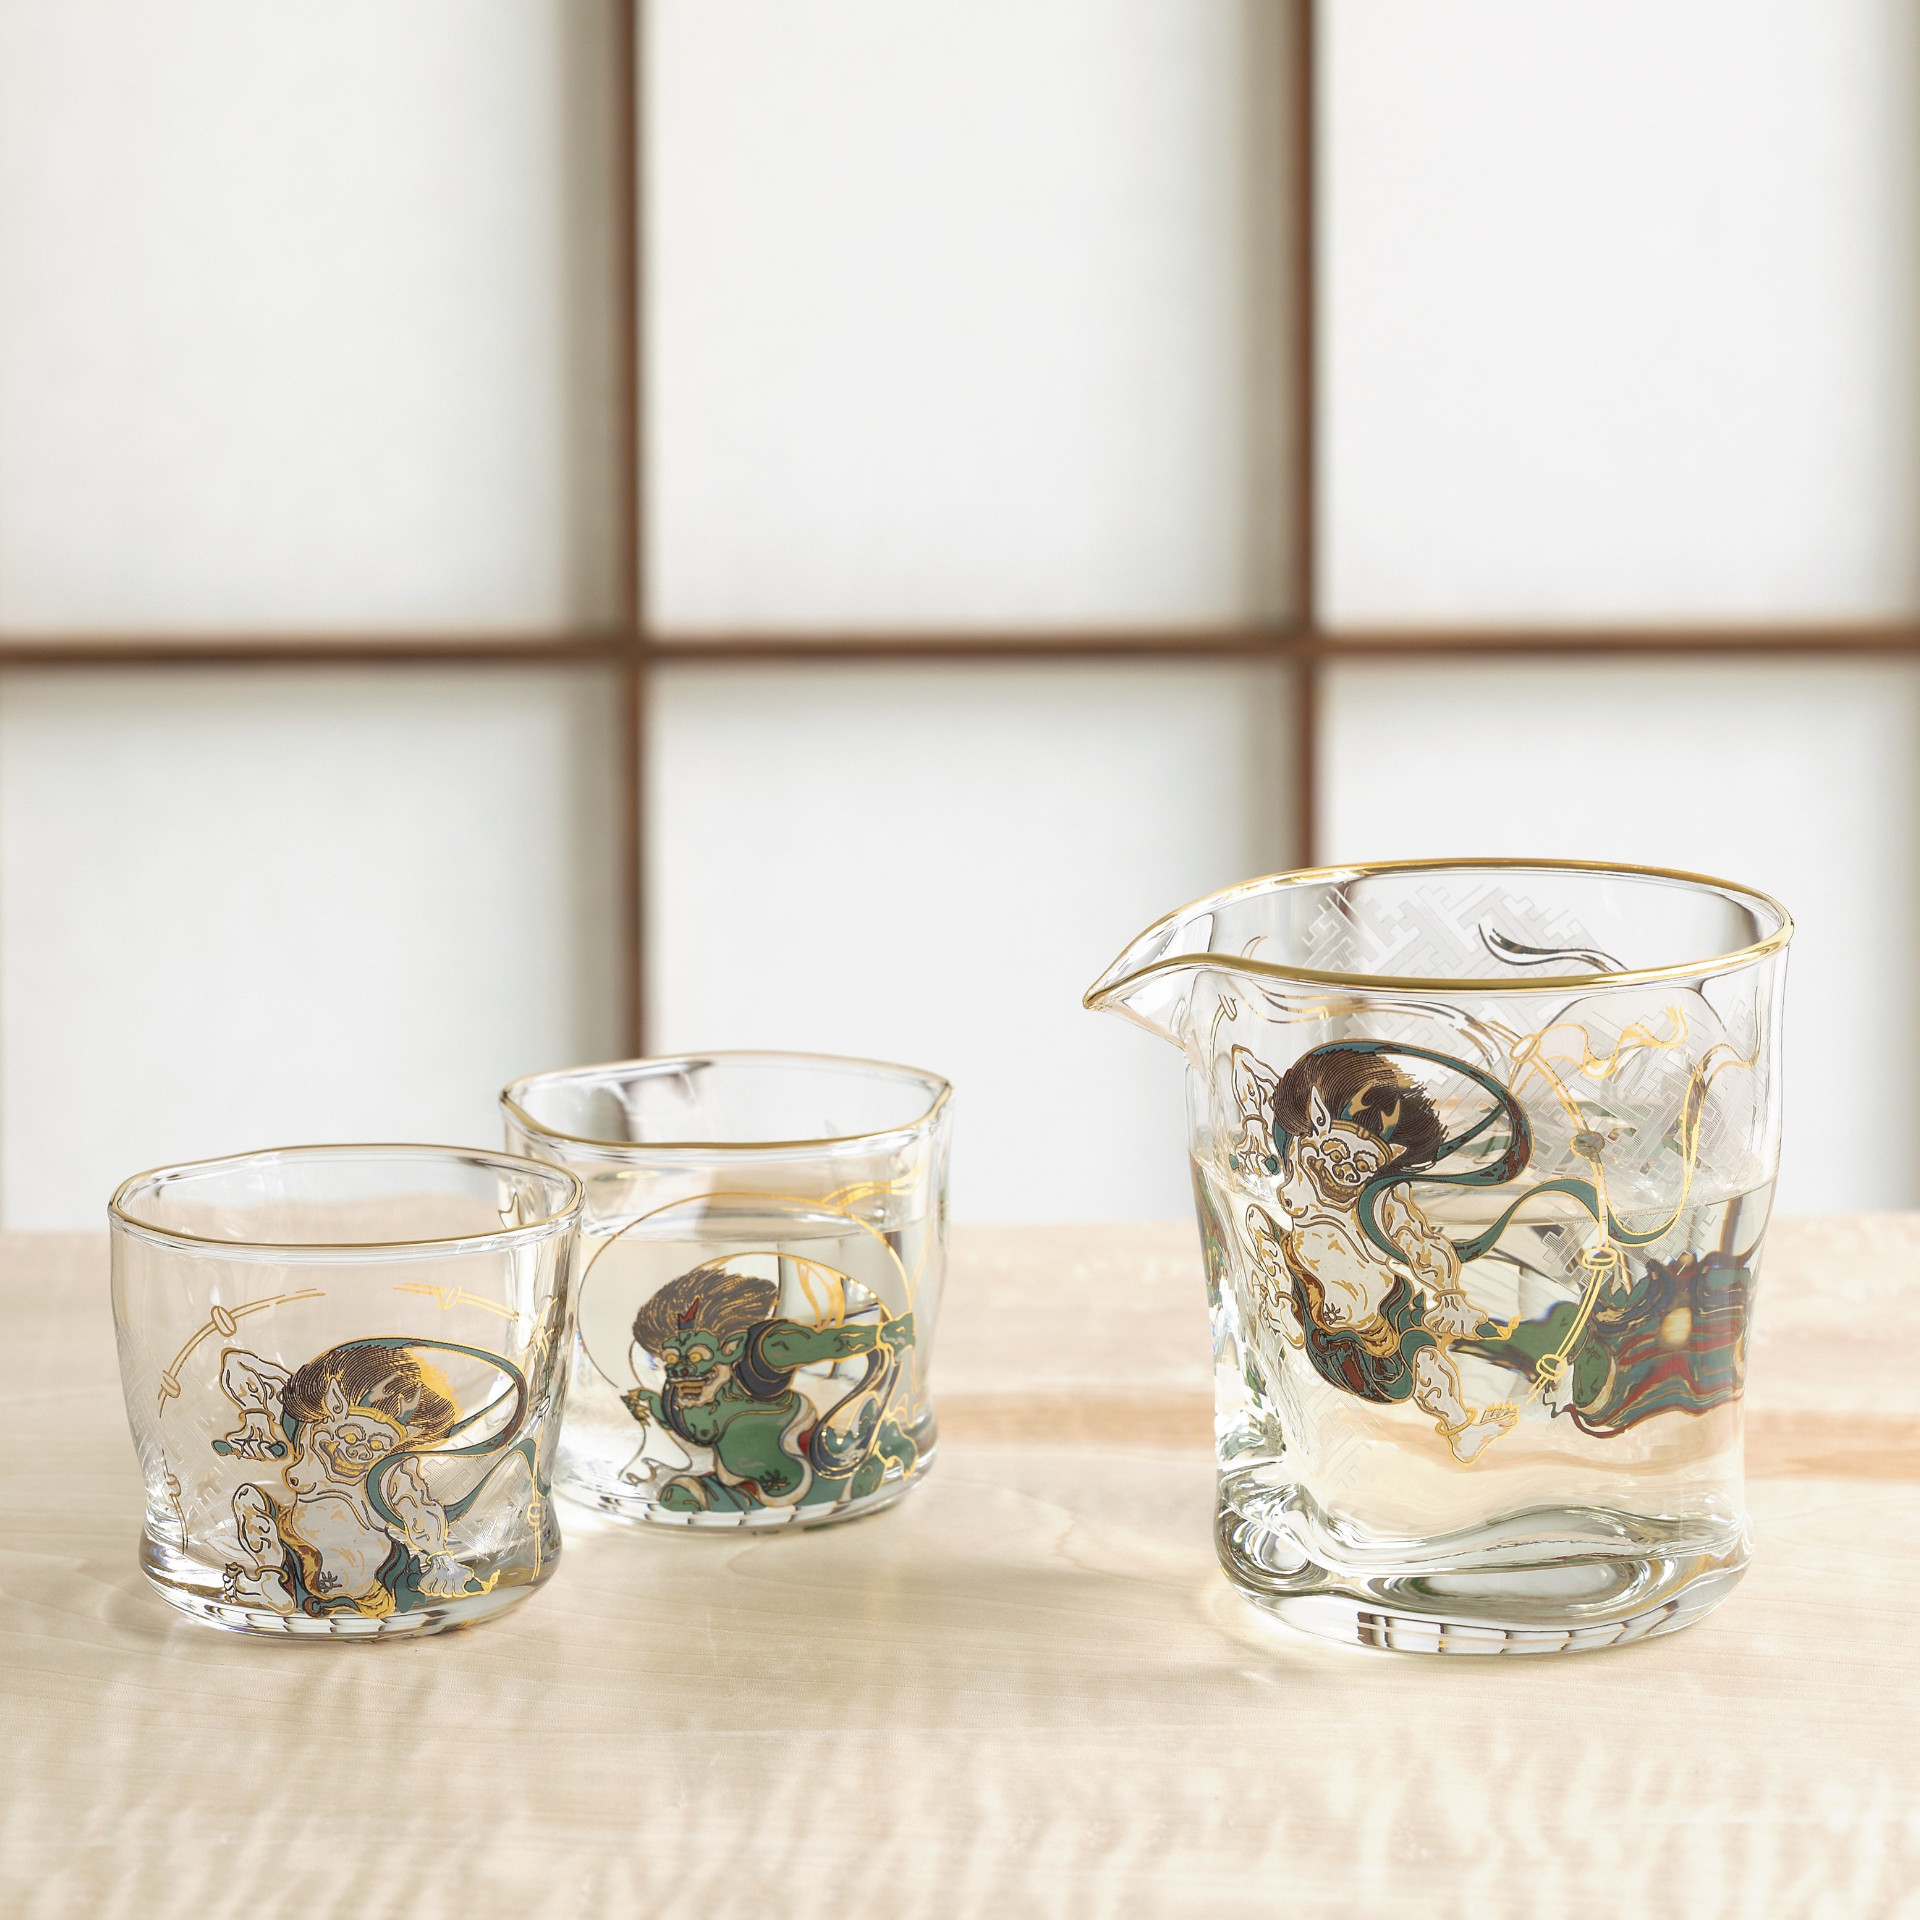 Fujin-Raijin Sake Set - 1 Jug and 2 Sake Glasses / 風神雷神 酒器セット